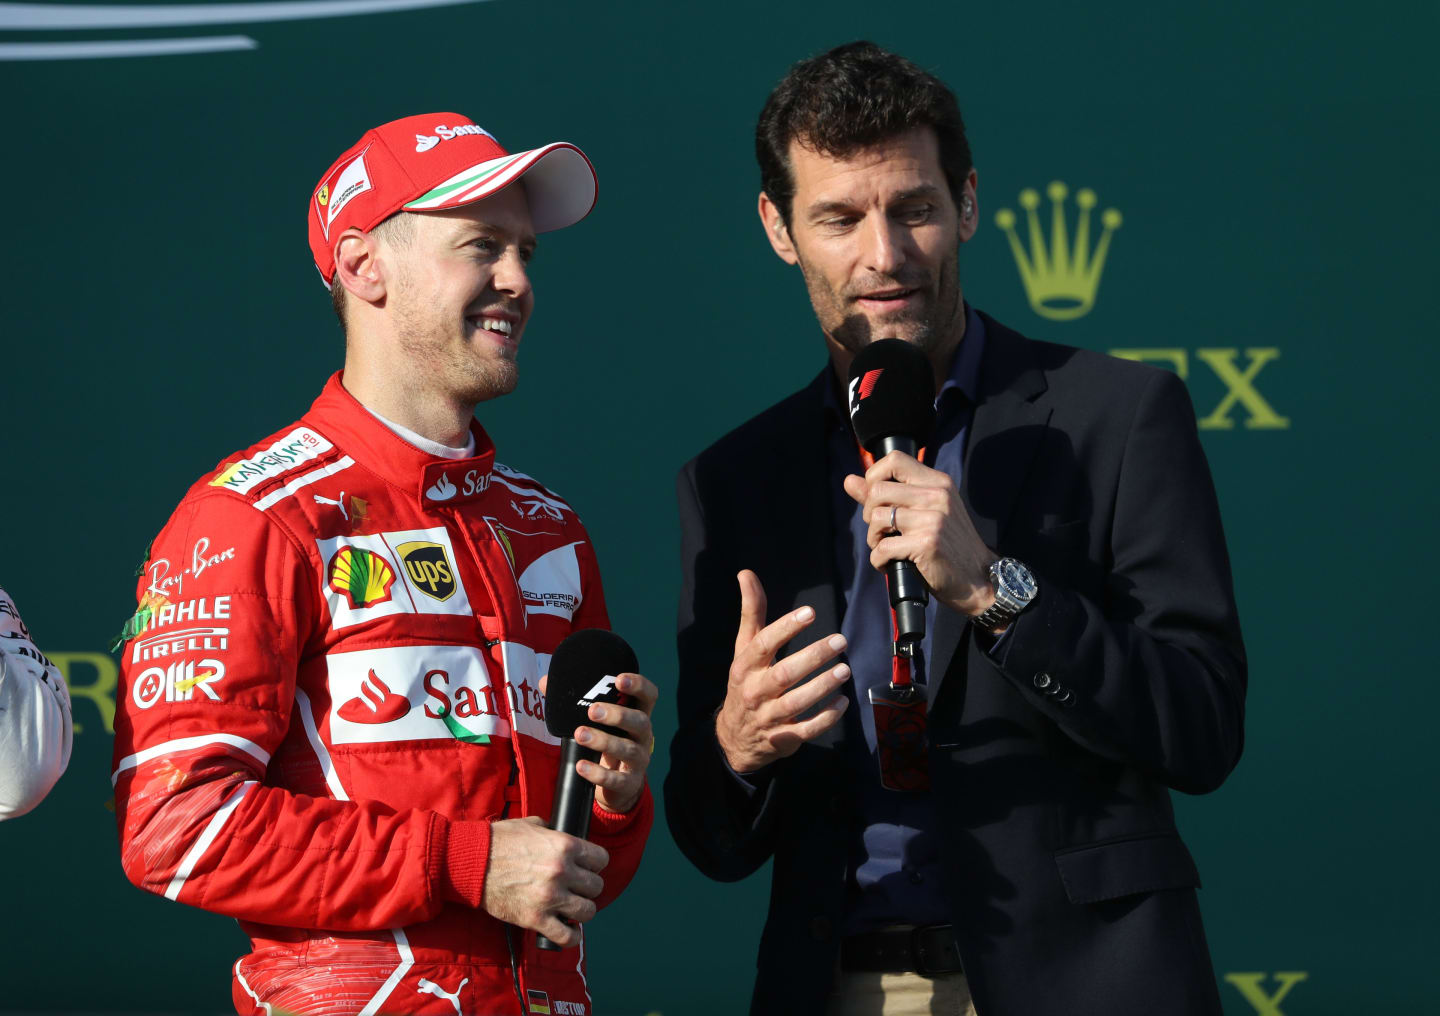 MELBOURNE, AUSTRALIA - MARCH 26: Race winner Sebastian Vettel of Germany and Ferrari talks with